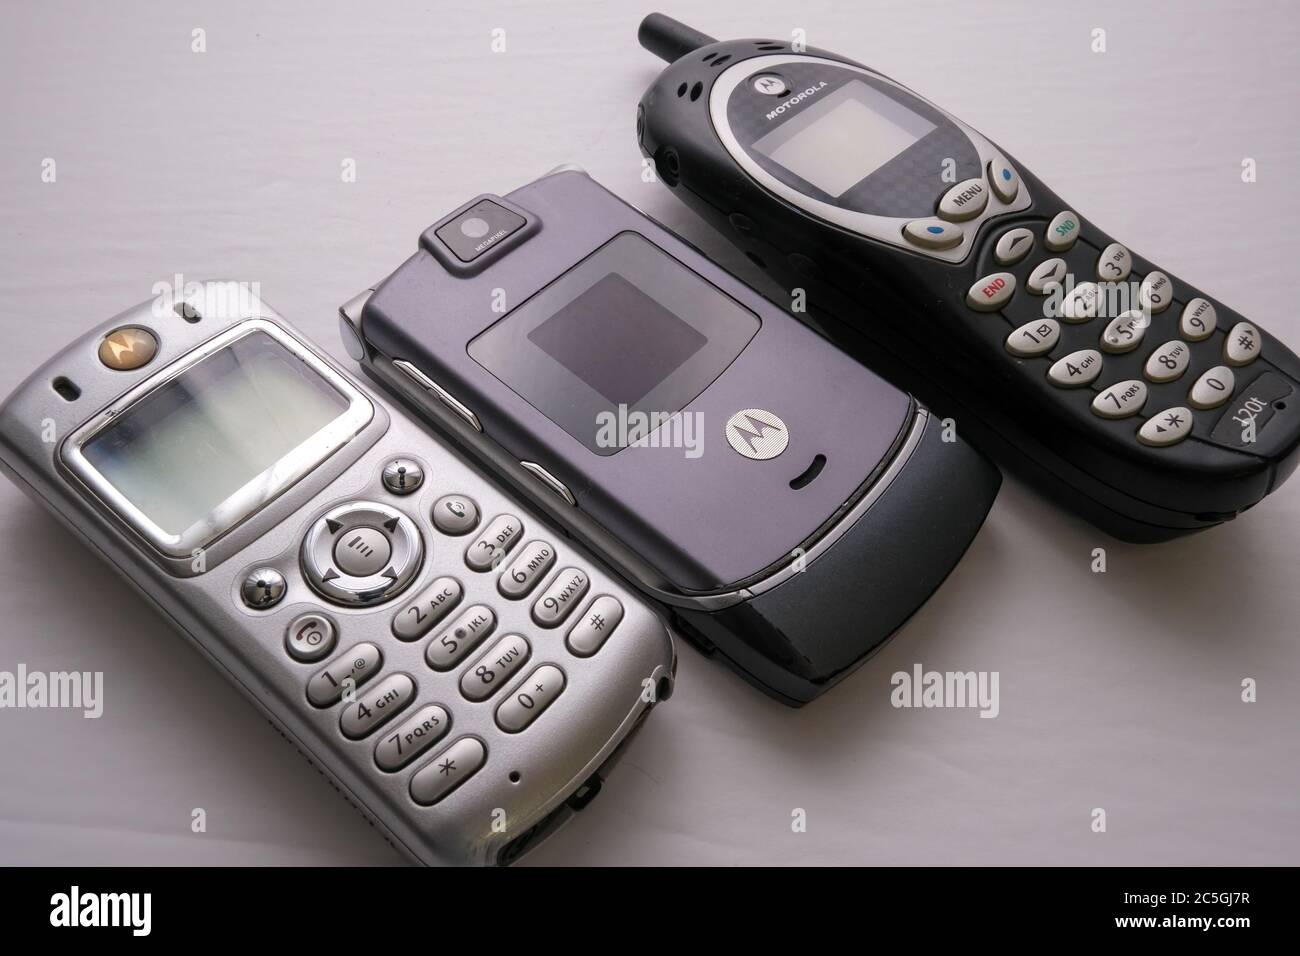 OTTAWA, ONTARIO, CANADA - 7/3/2020: Tre telefoni cellulari Motorla più diffusi dei primi anni 2000: Un Motorola C333, un Motorola Razr V3i e un Motorola 120t. Foto Stock